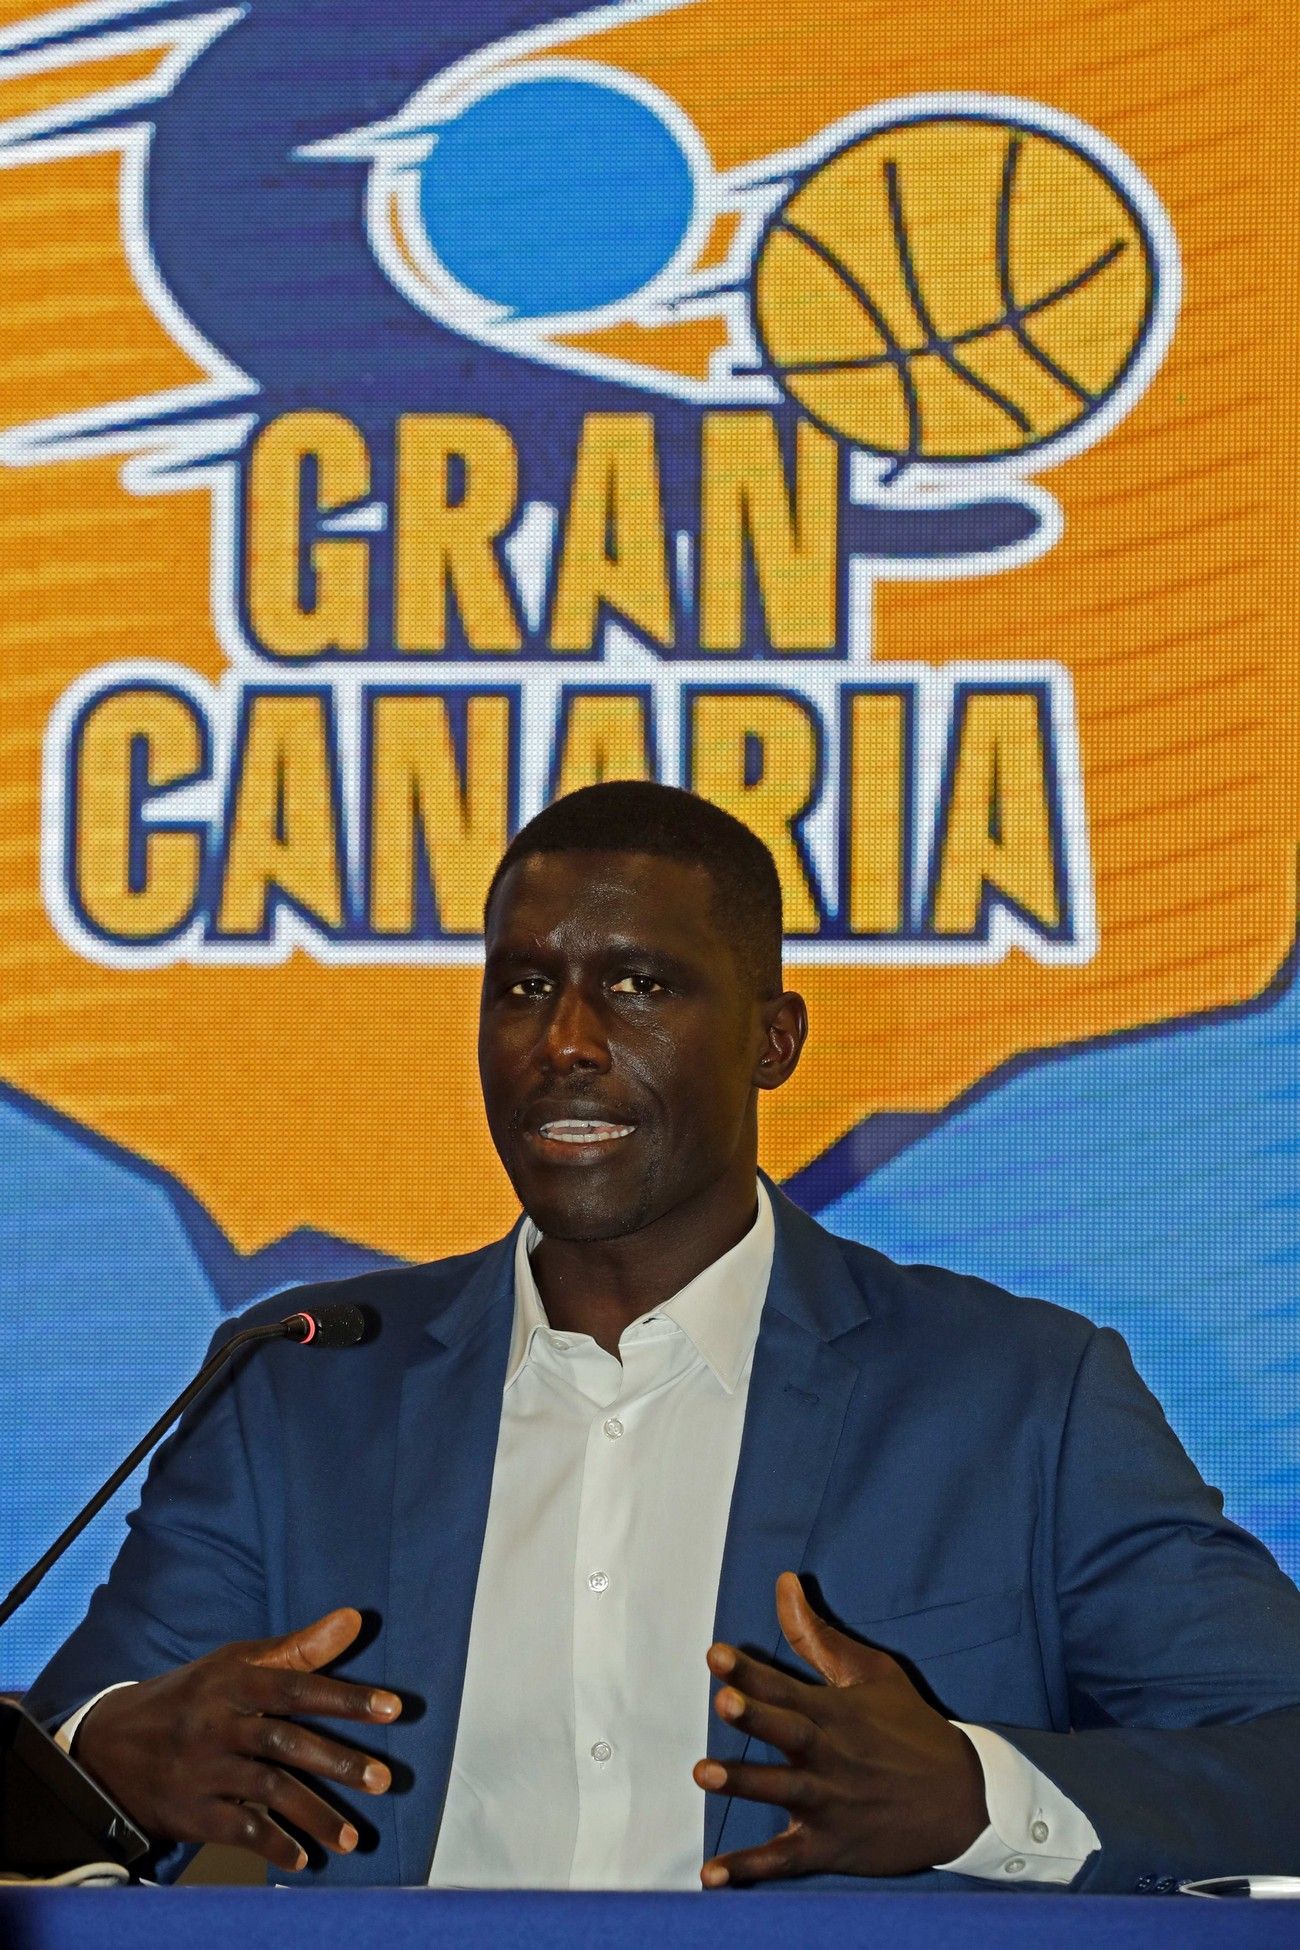 Savané, nuevo presidente del CB Gran Canaria